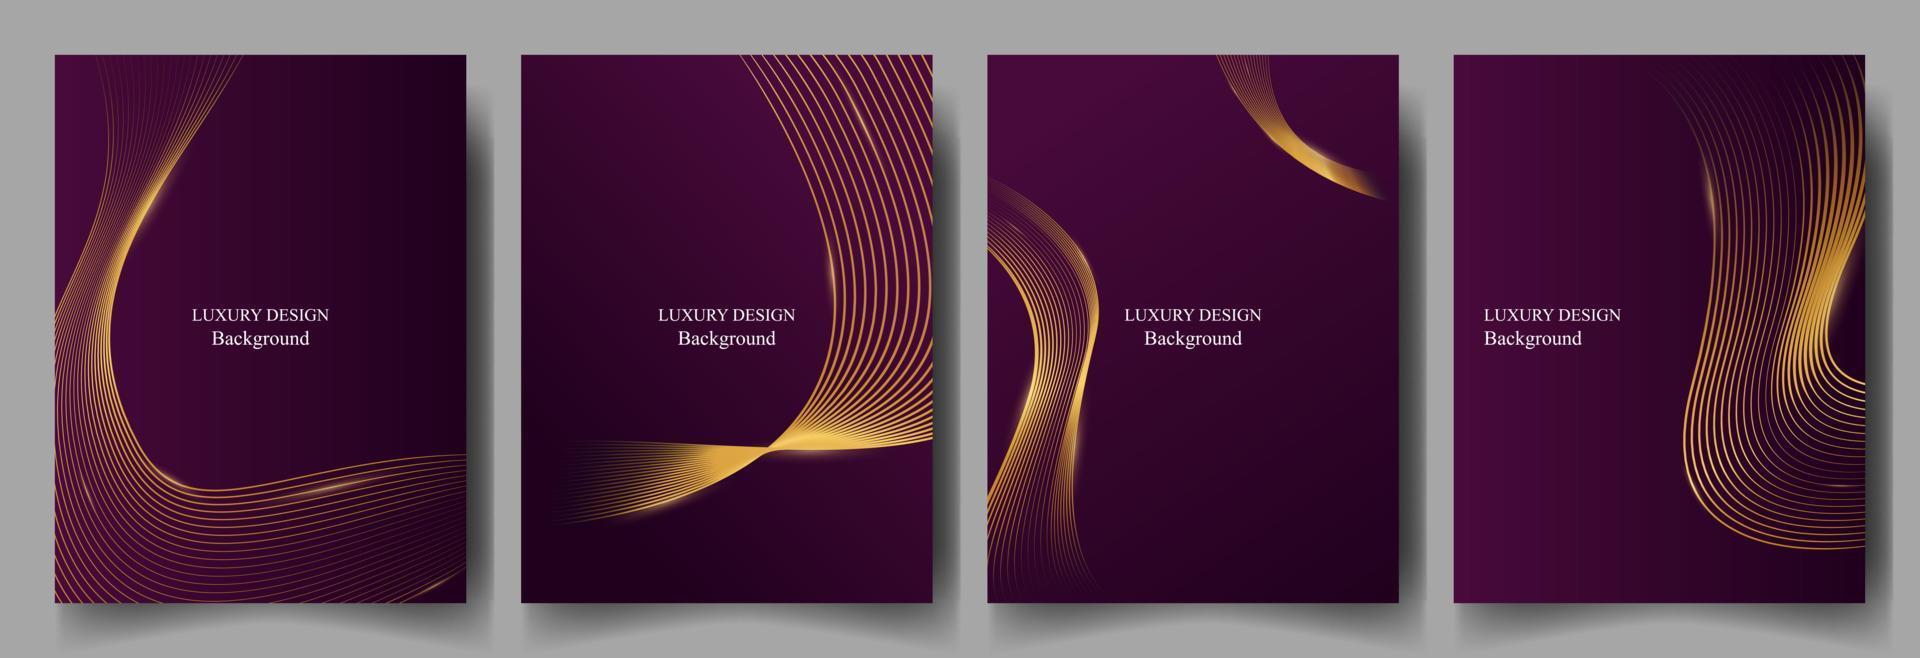 ensemble luxe violet Contexte avec abstrait ondulé or doubler. vecteur illustration eps10